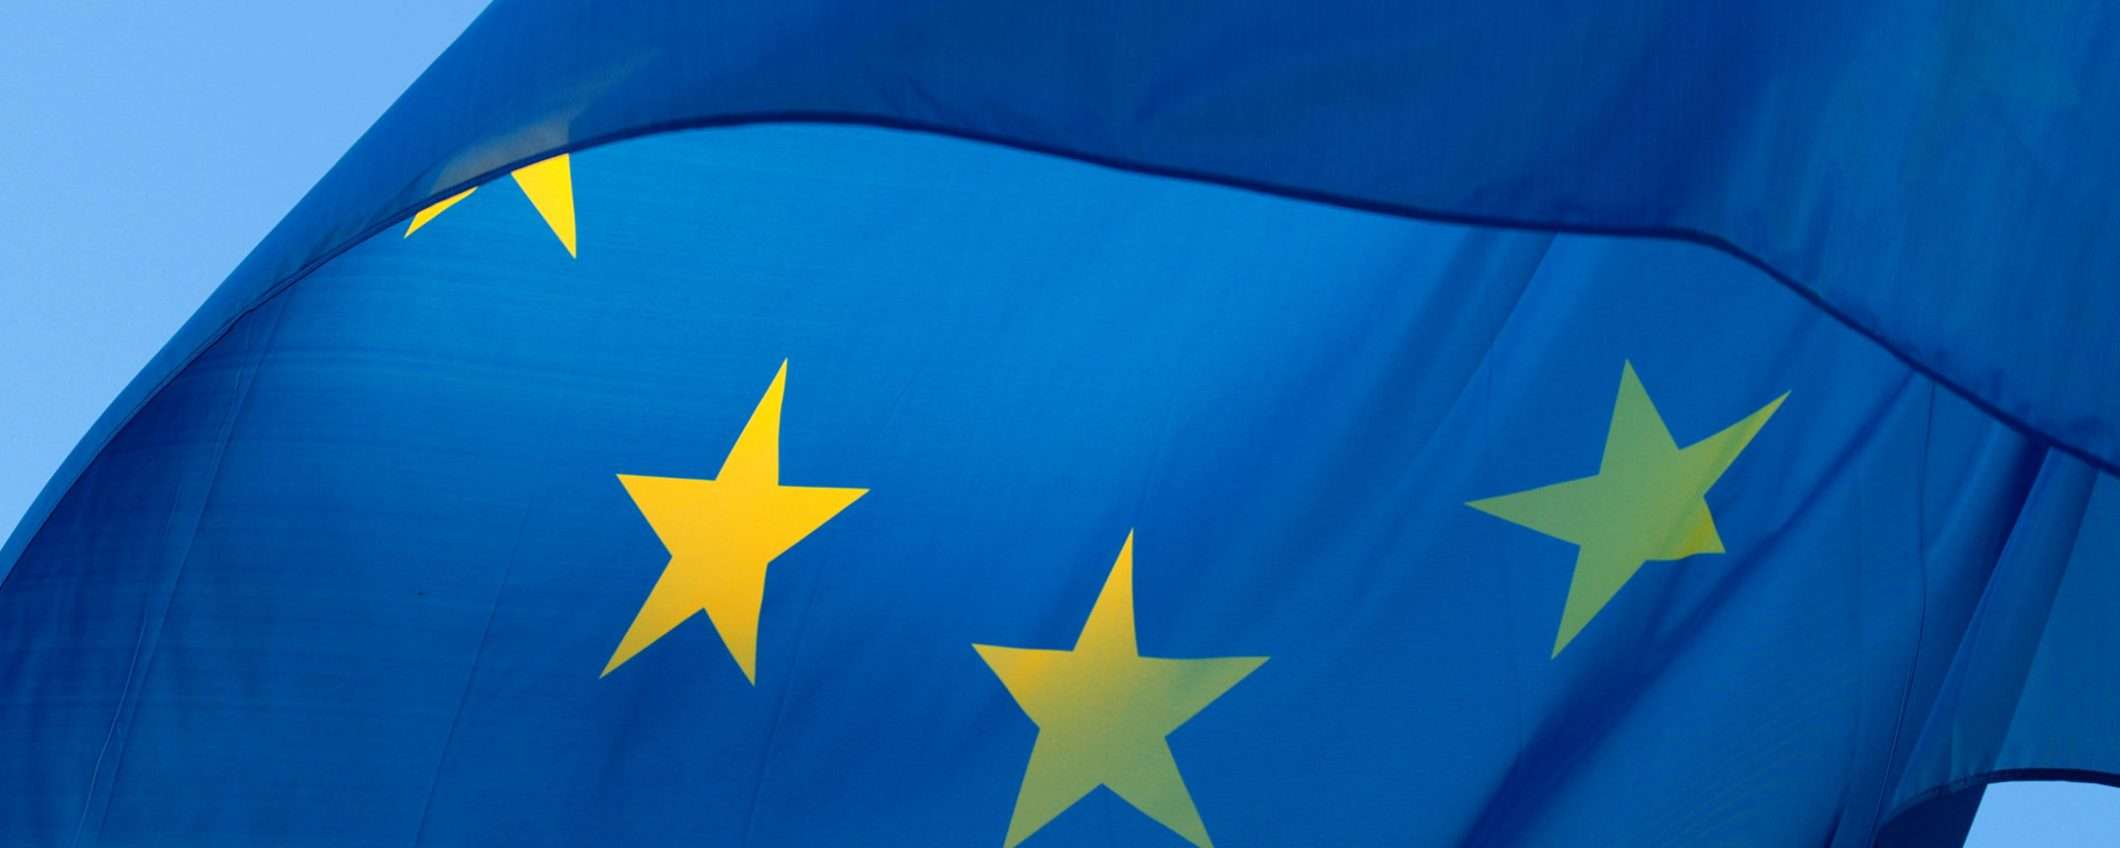 EU: addio geoblocking, acquisti senza frontiere